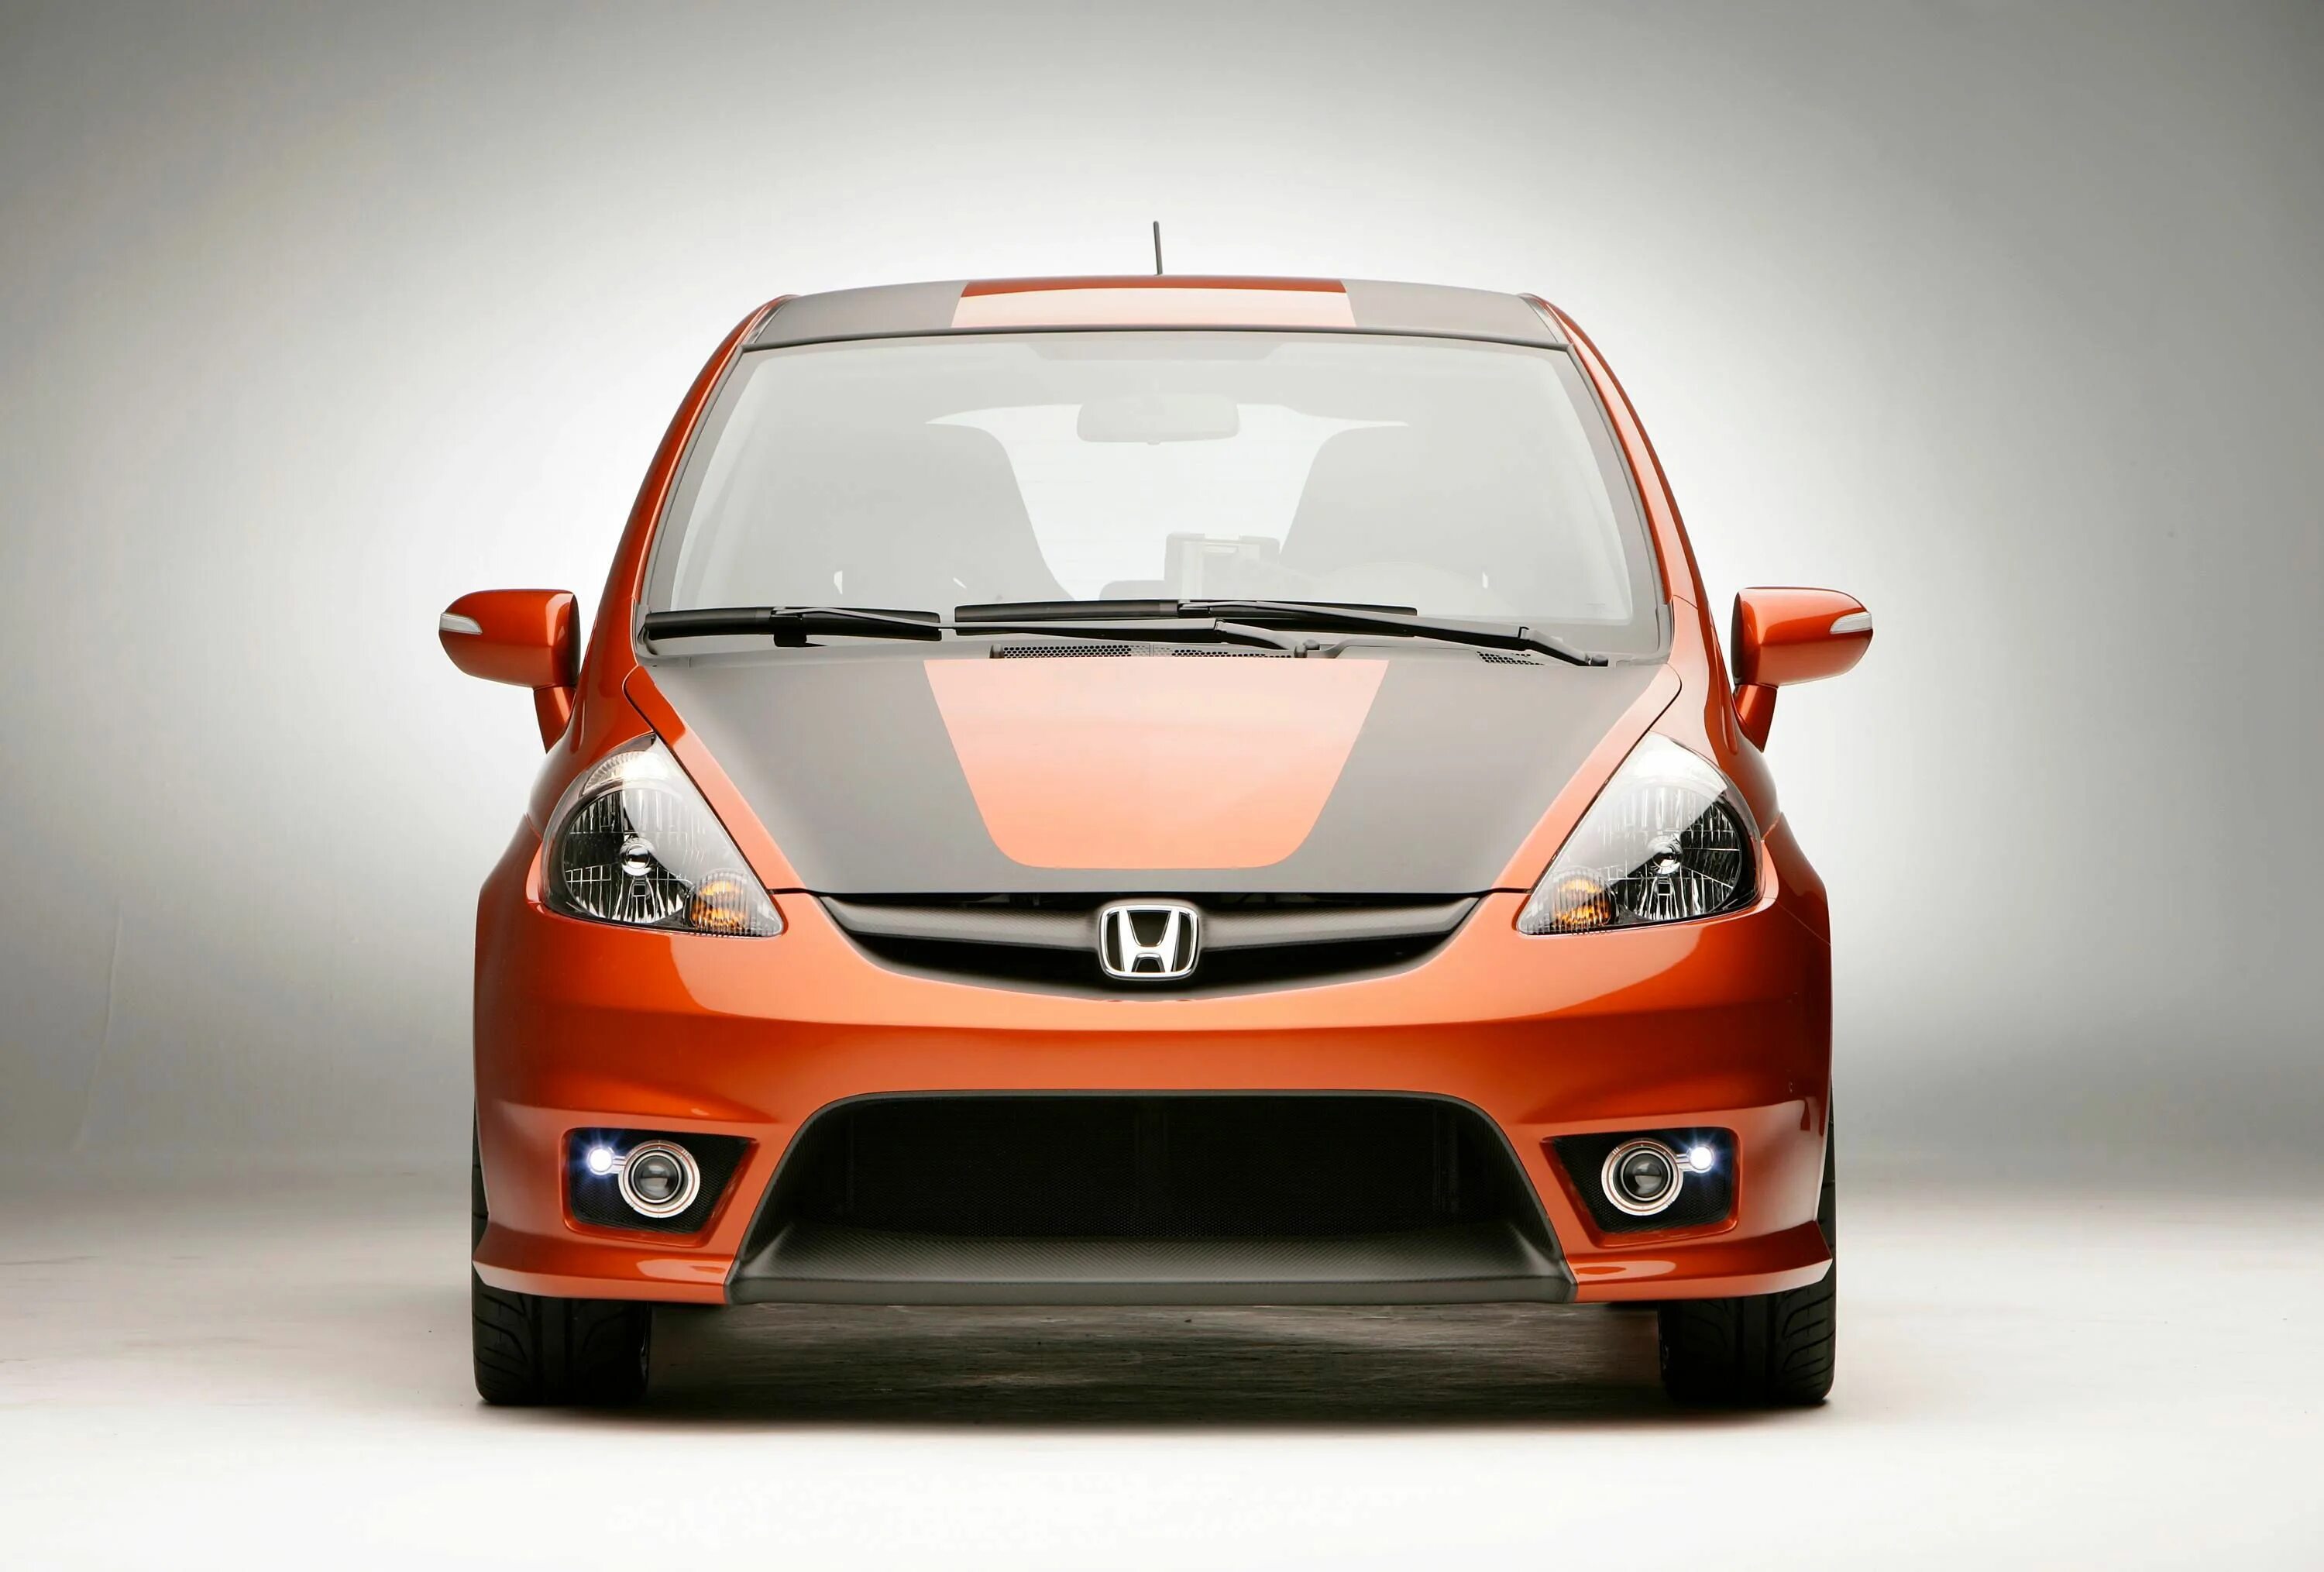 Honda Fit Sport. Honda Fit Sport 2007. Honda Fit 1.3 g sporty Edition. Хонда фит 2007 спереди.